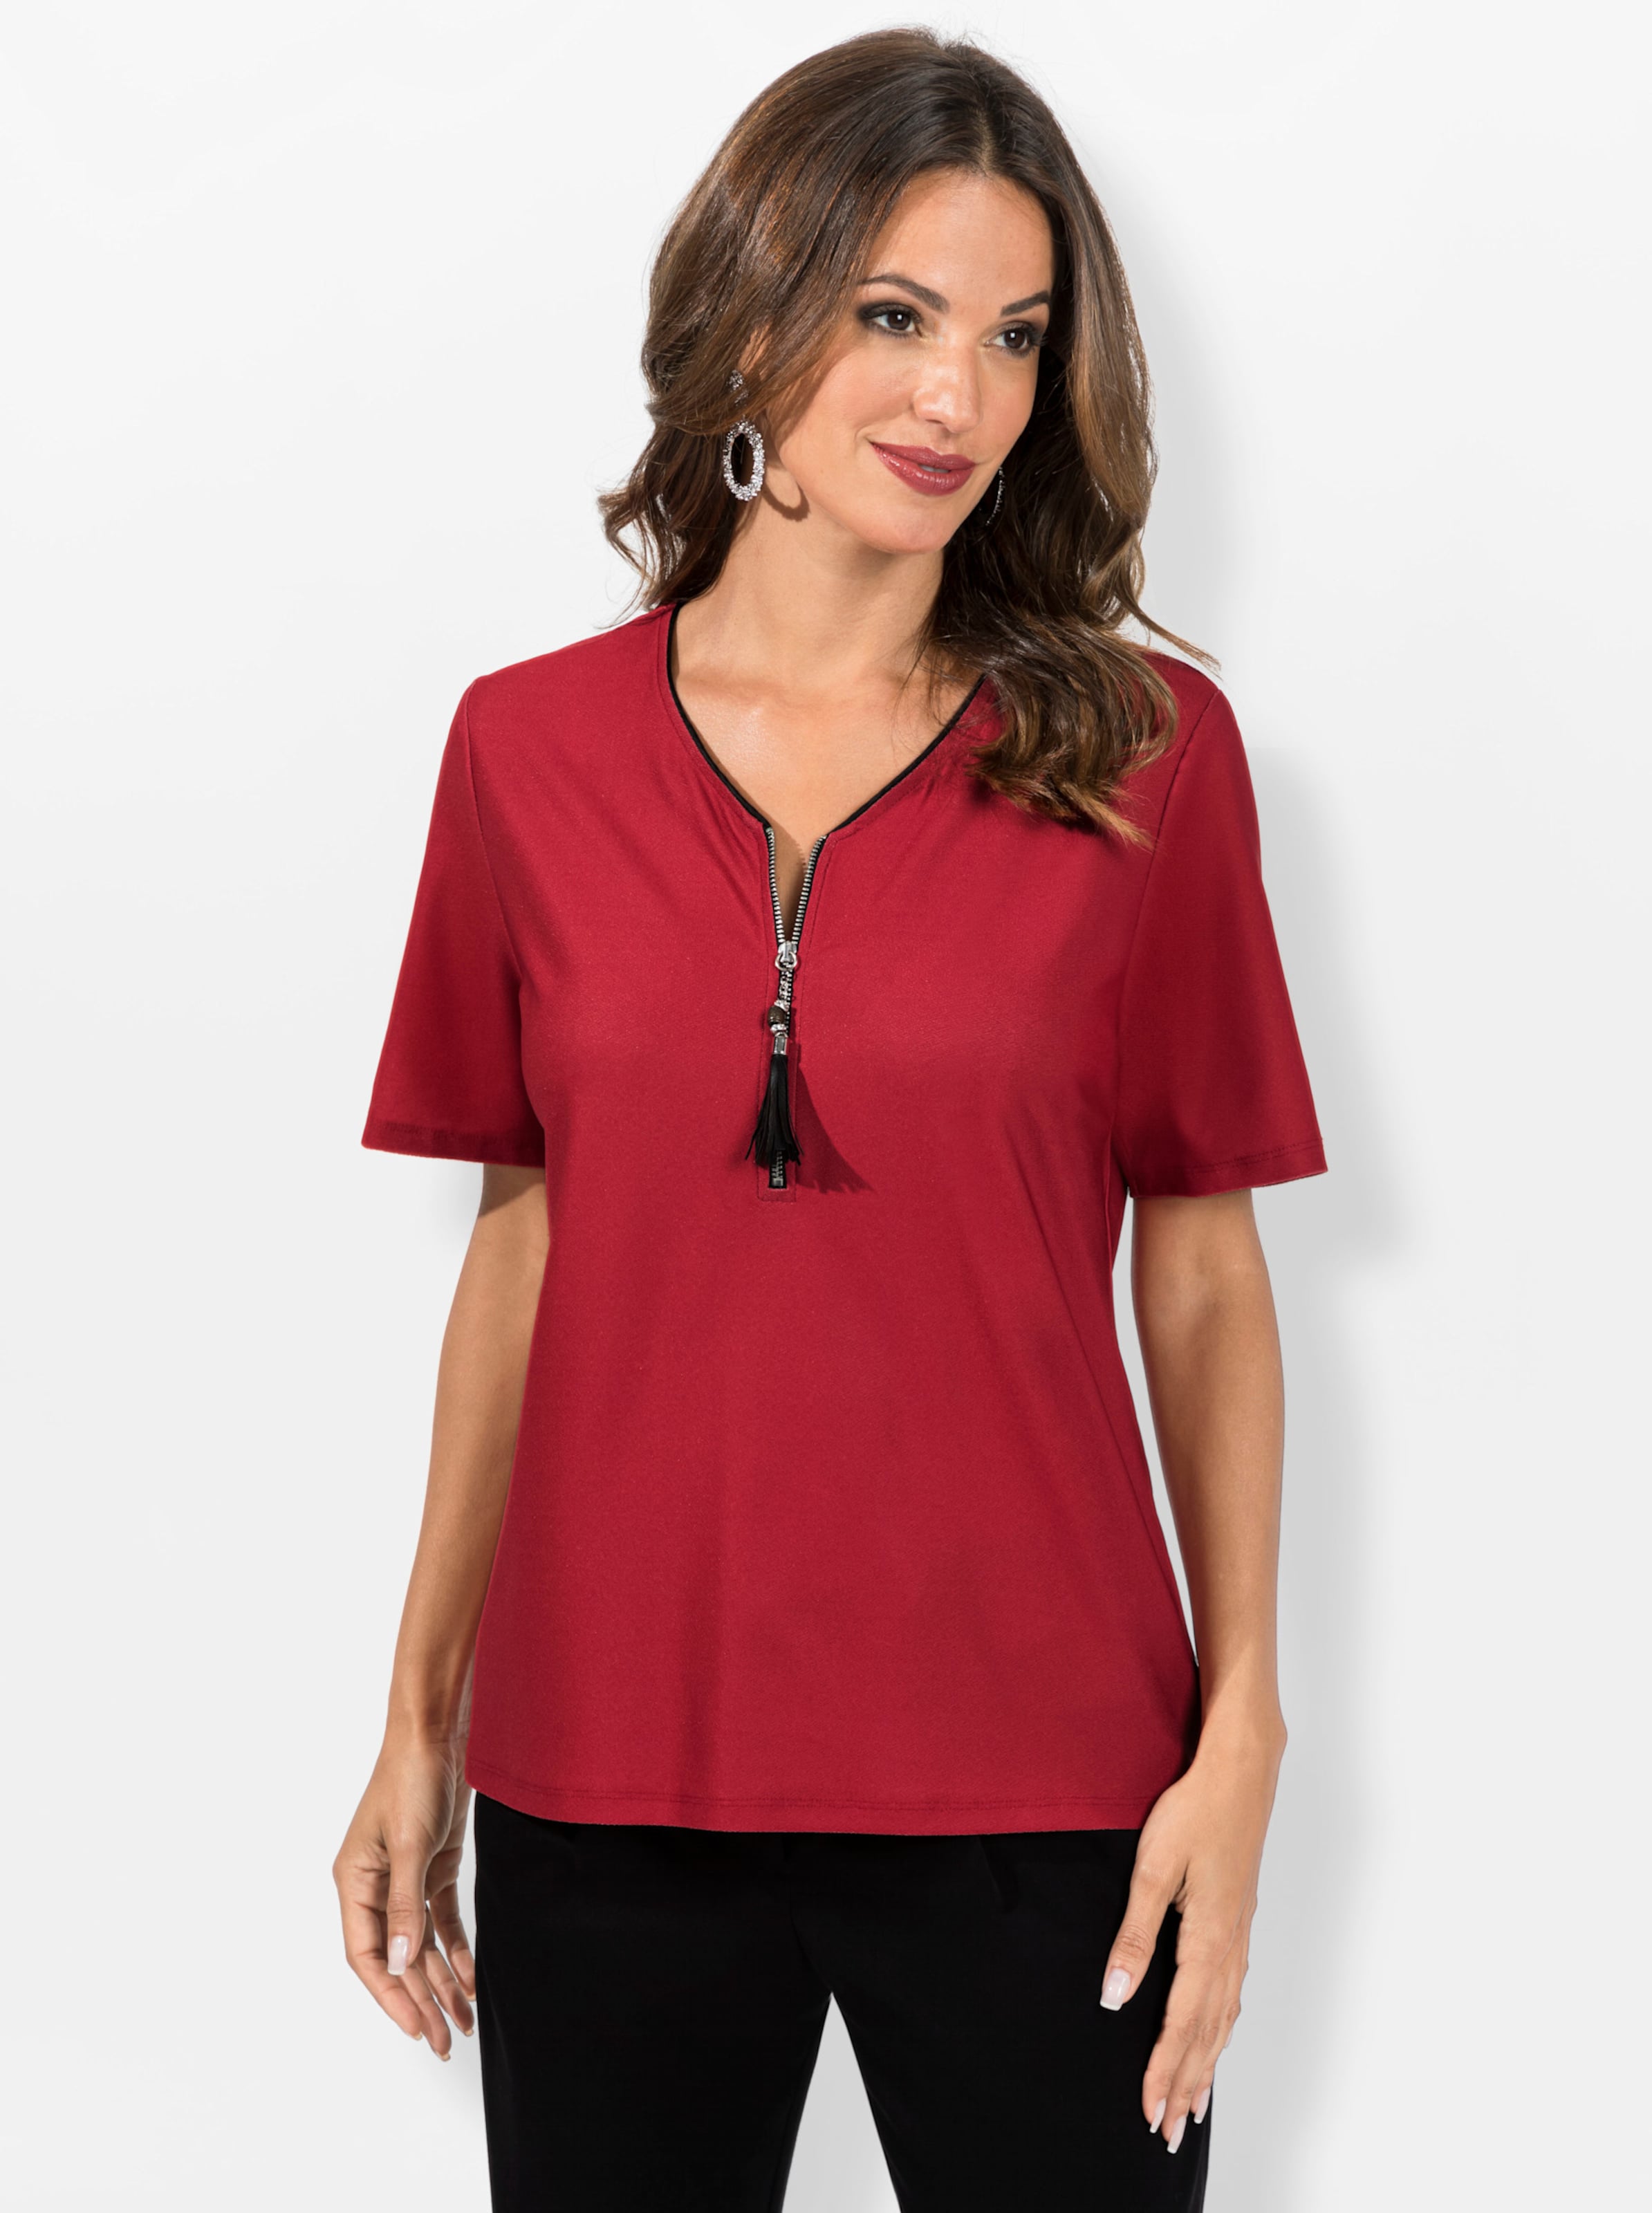 Rast und günstig Kaufen-Shirt in rot von heine. Shirt in rot von heine <![CDATA[Ein tolles Shirt! Mit Kontrast-Details, kurzem Reißverschluss und dekorativem Anhänger am V-Ausschnitt.]]>. 